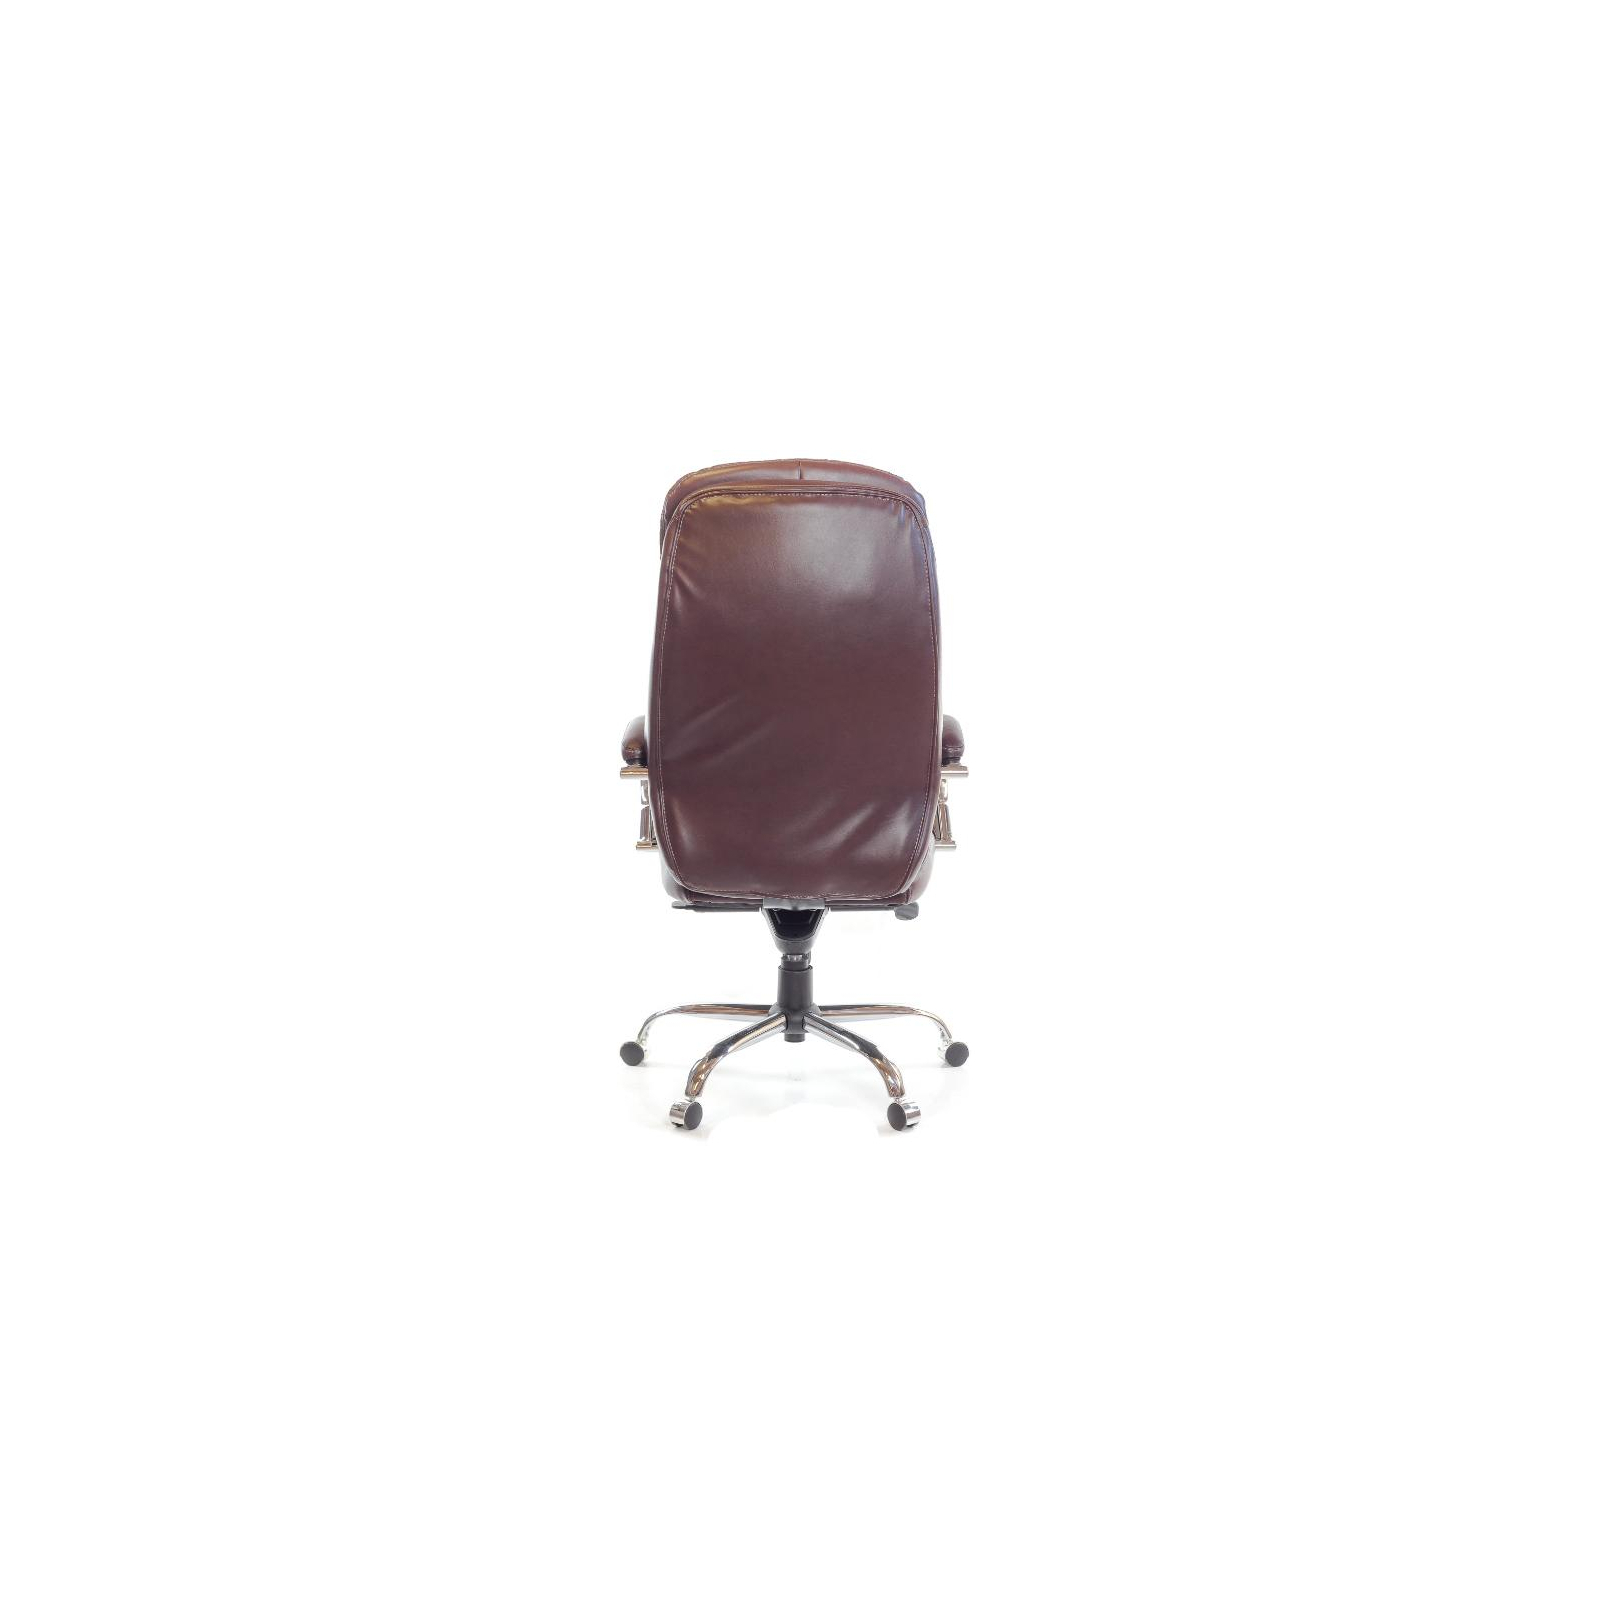 Офисное кресло Аклас Валенсия Soft CH MB Белое (07392) изображение 5